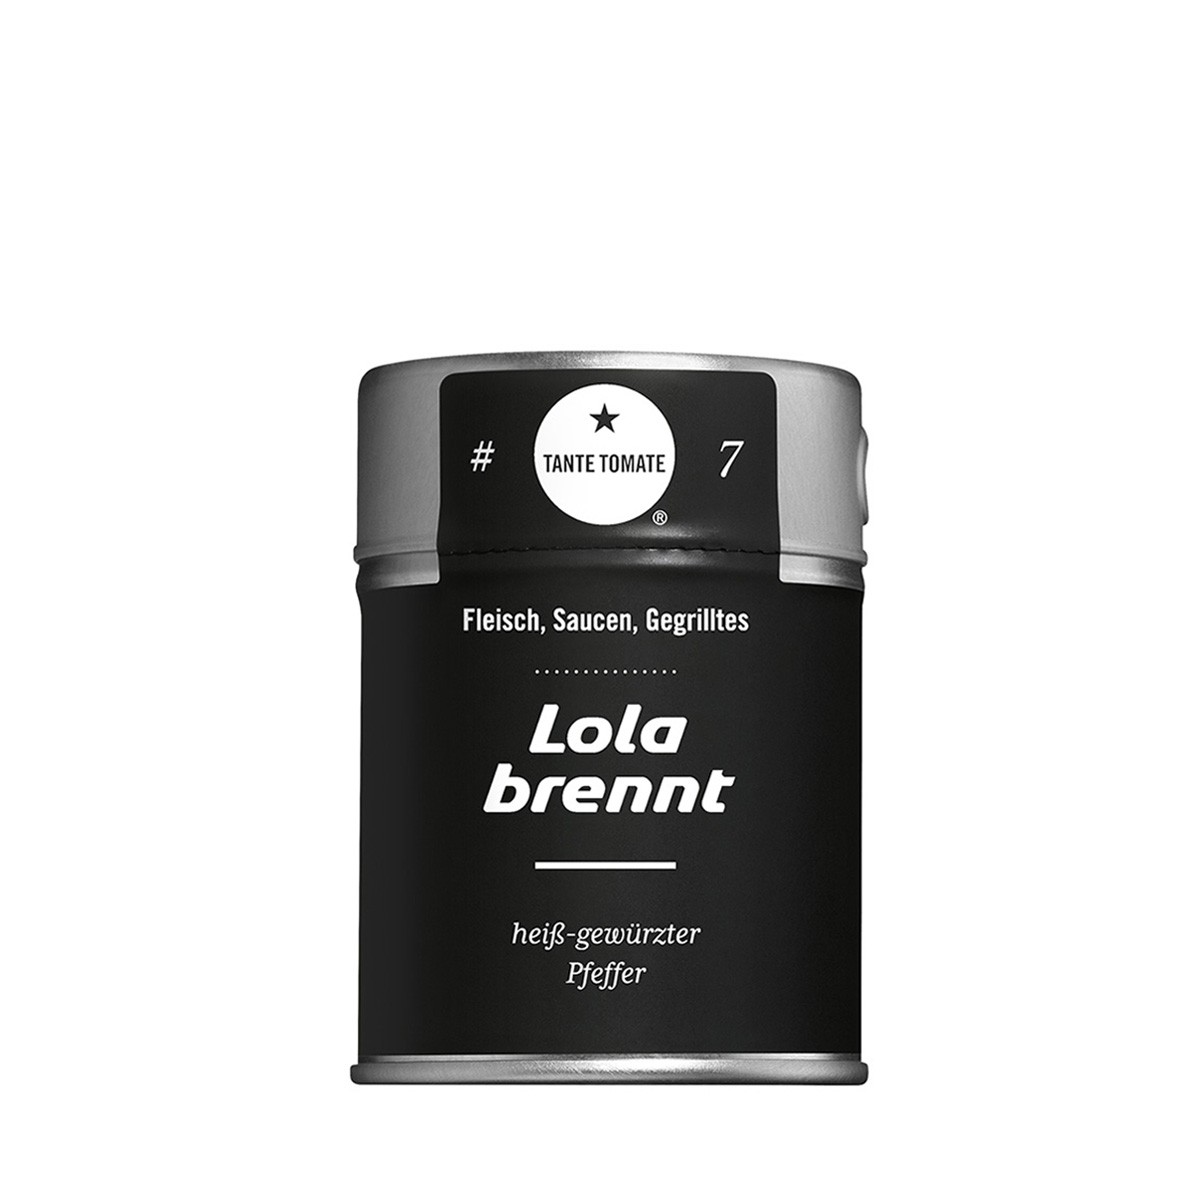 Lola brennt – Gewürzzubereitung – Für Fleisch, Saucen und Gegrillte…